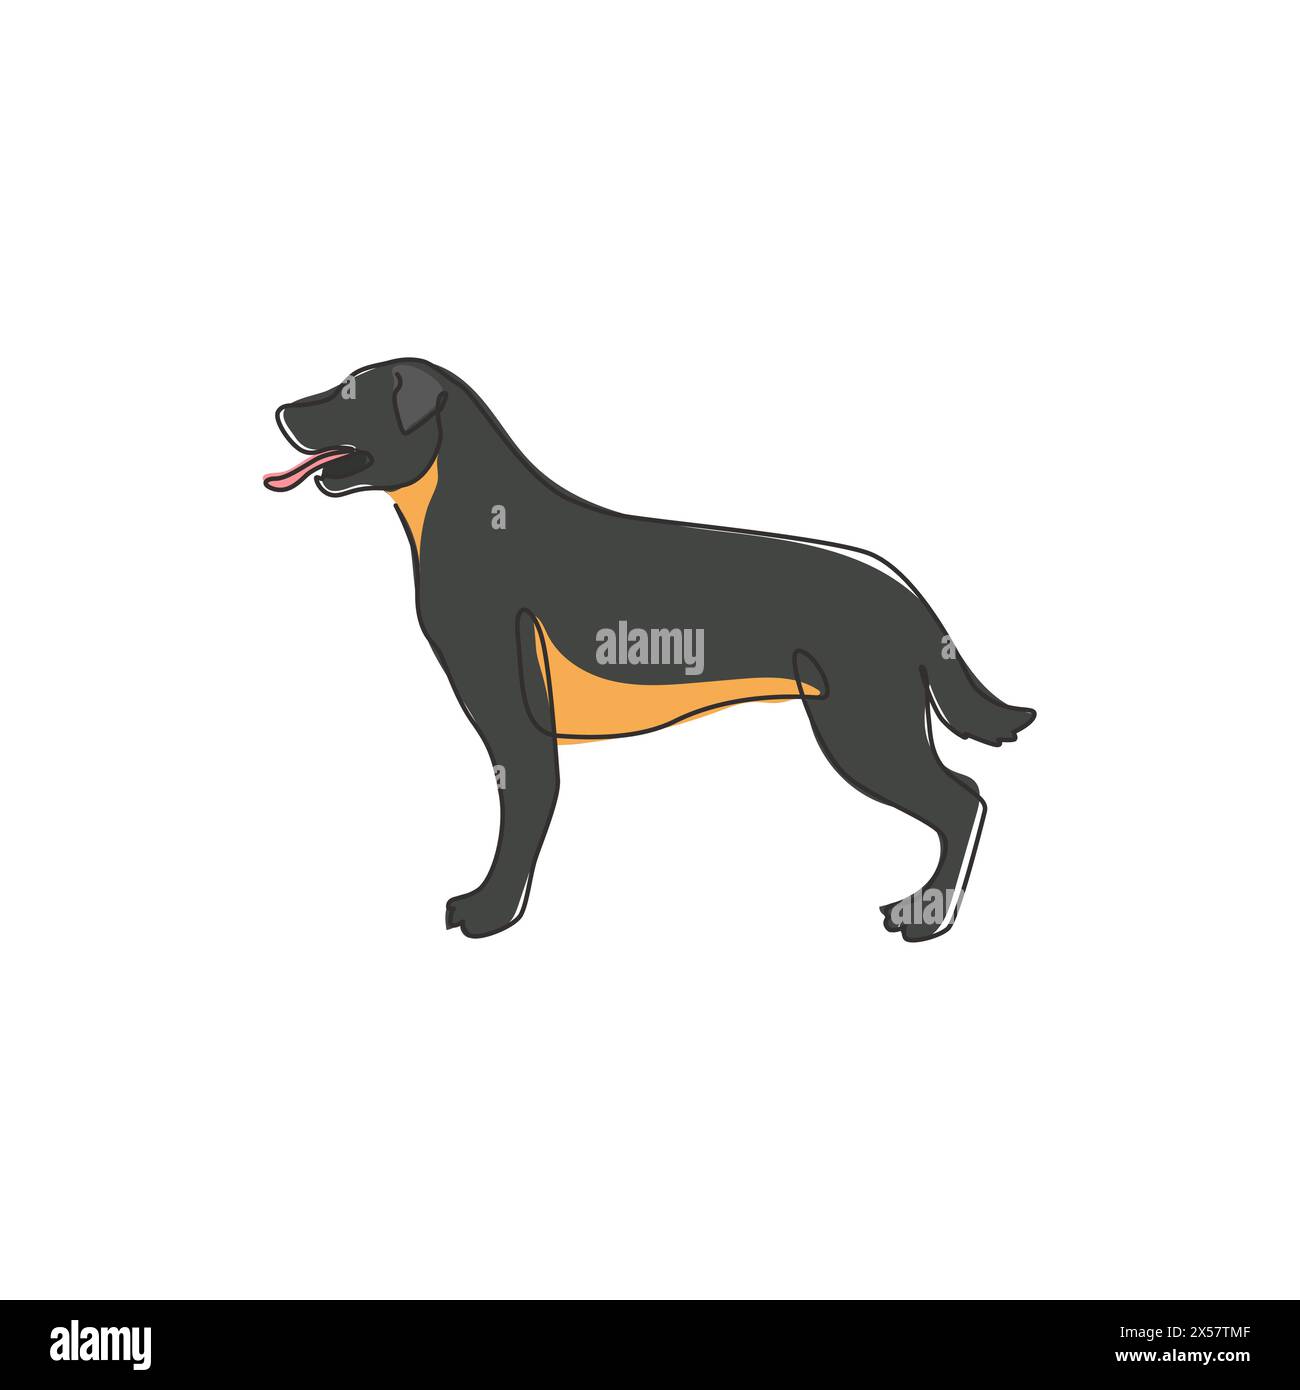 Un disegno continuo di un cane rottweiler feroce per l'identità del logo aziendale di sicurezza. Mascotte per cani di razza pura per un'icona che ammette animali domestici. M Illustrazione Vettoriale